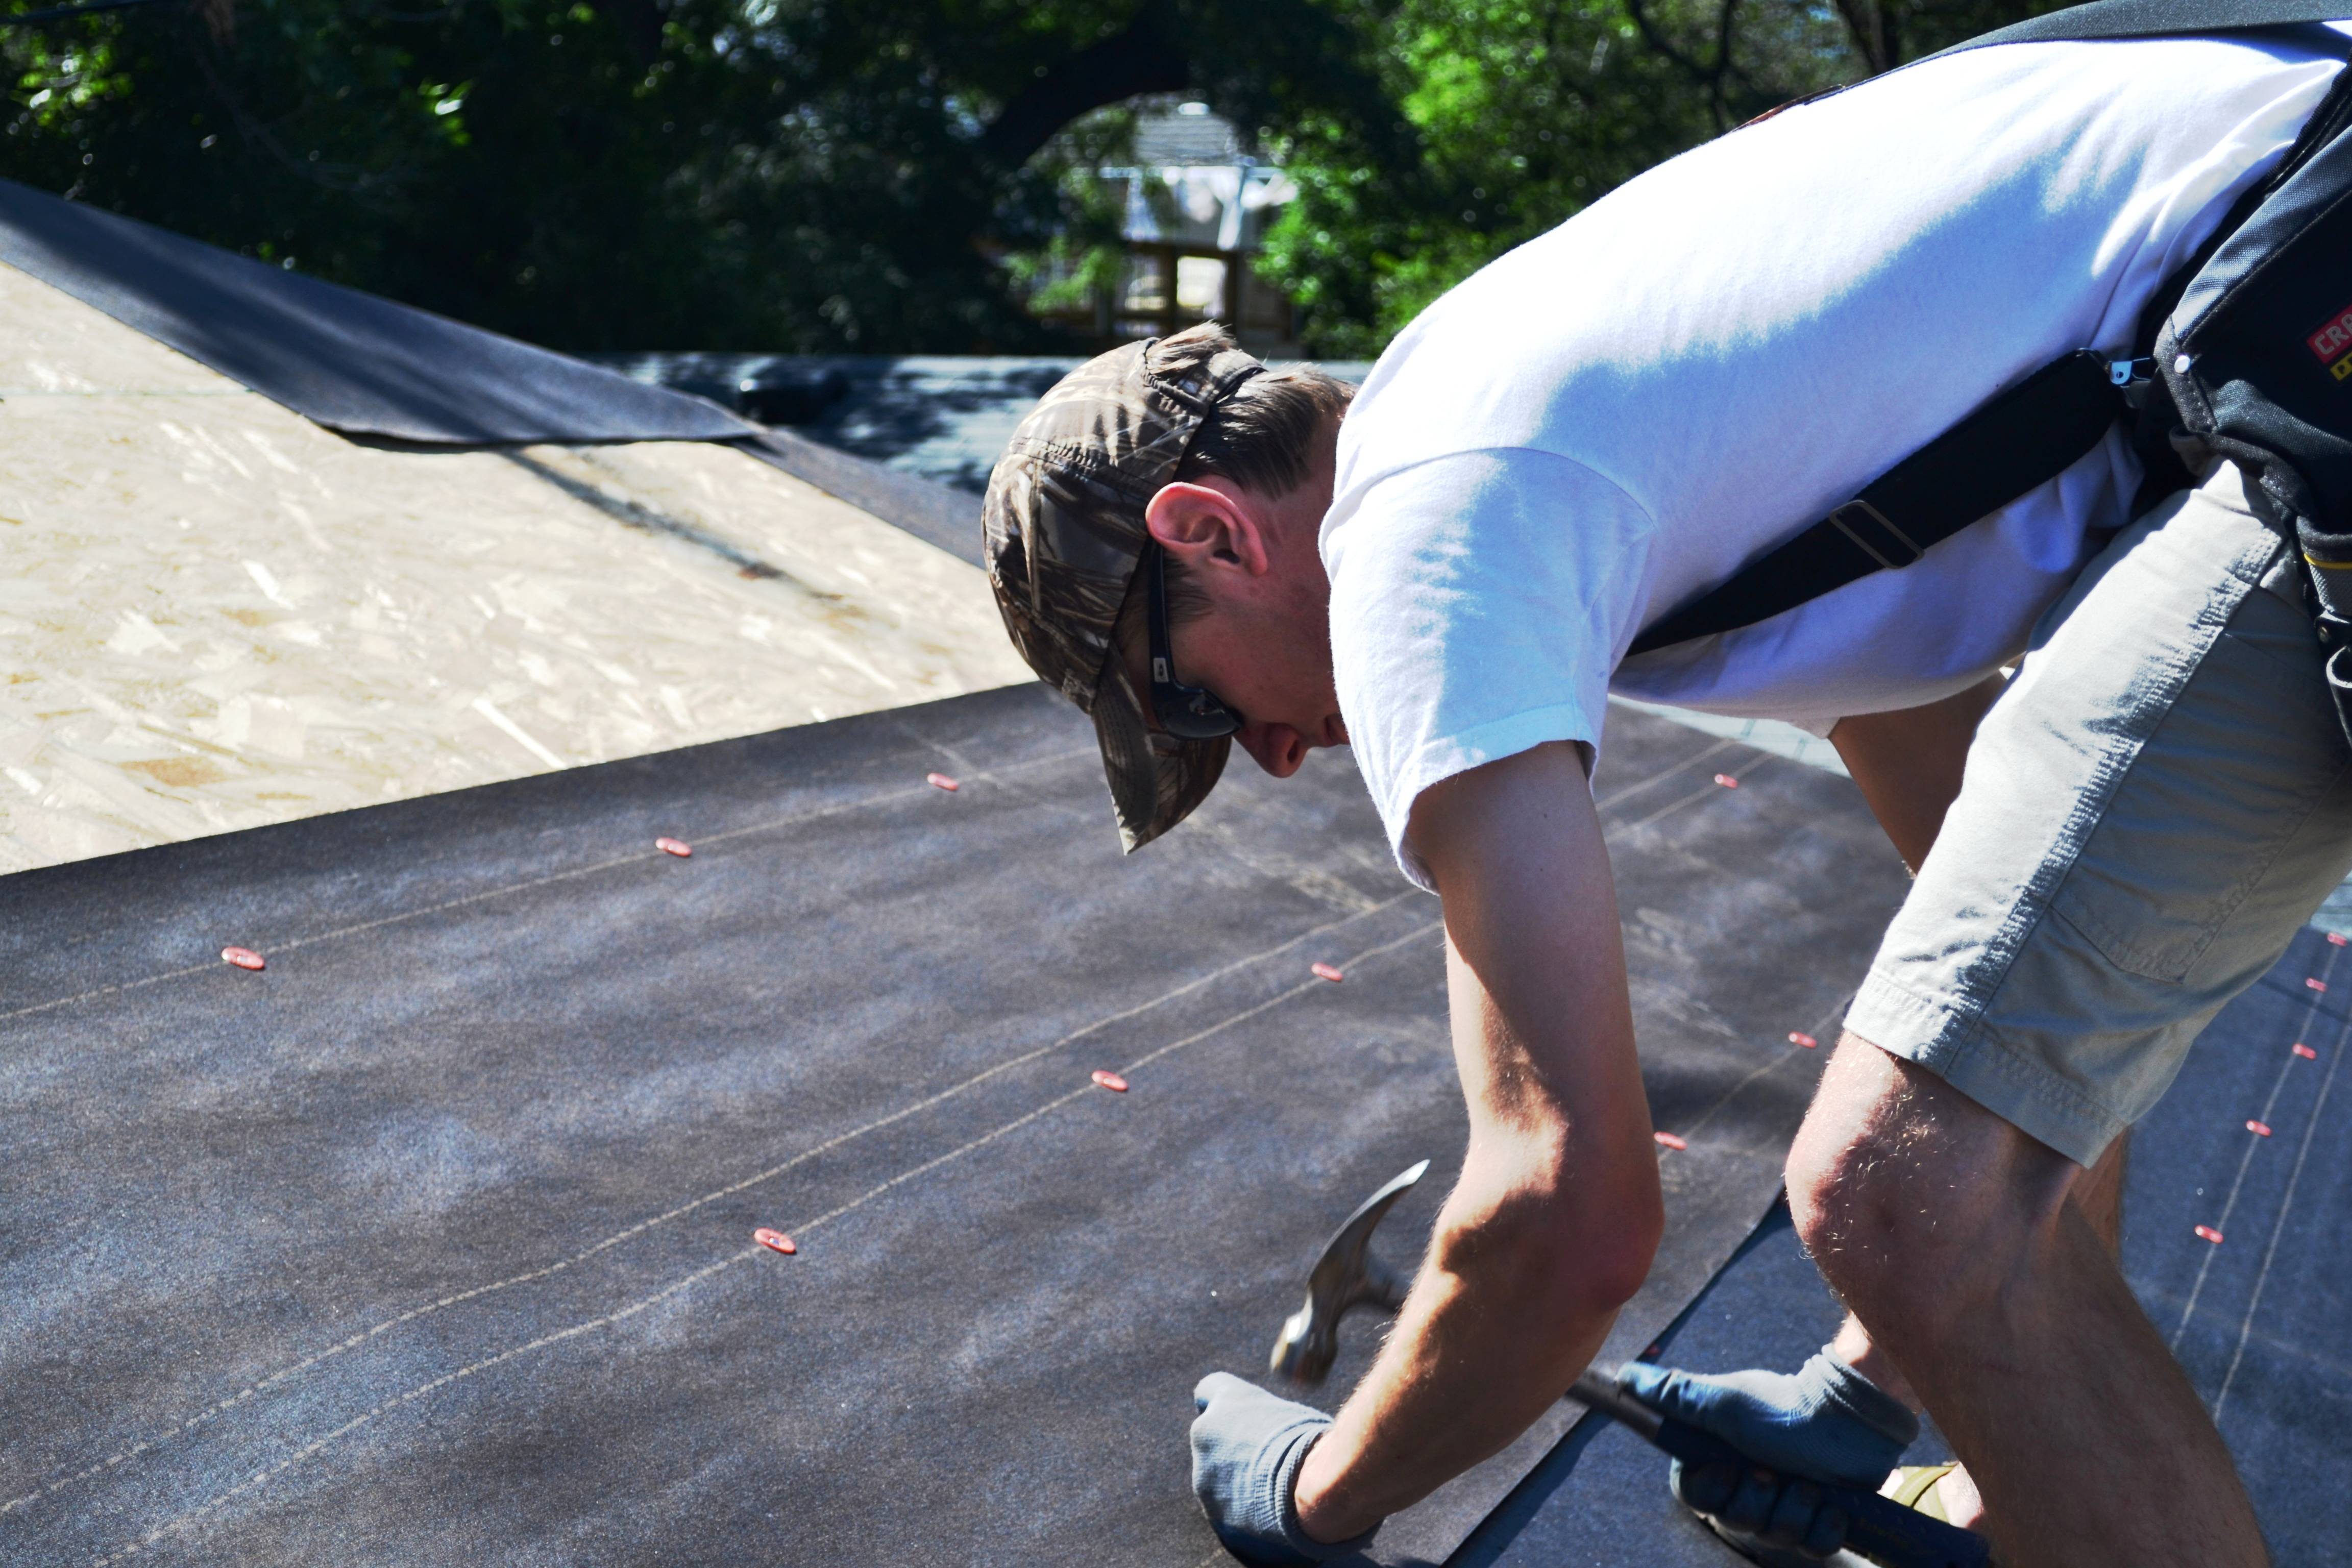 Как правильно покрыть крышу рубероидом: технология укладки и нюансы